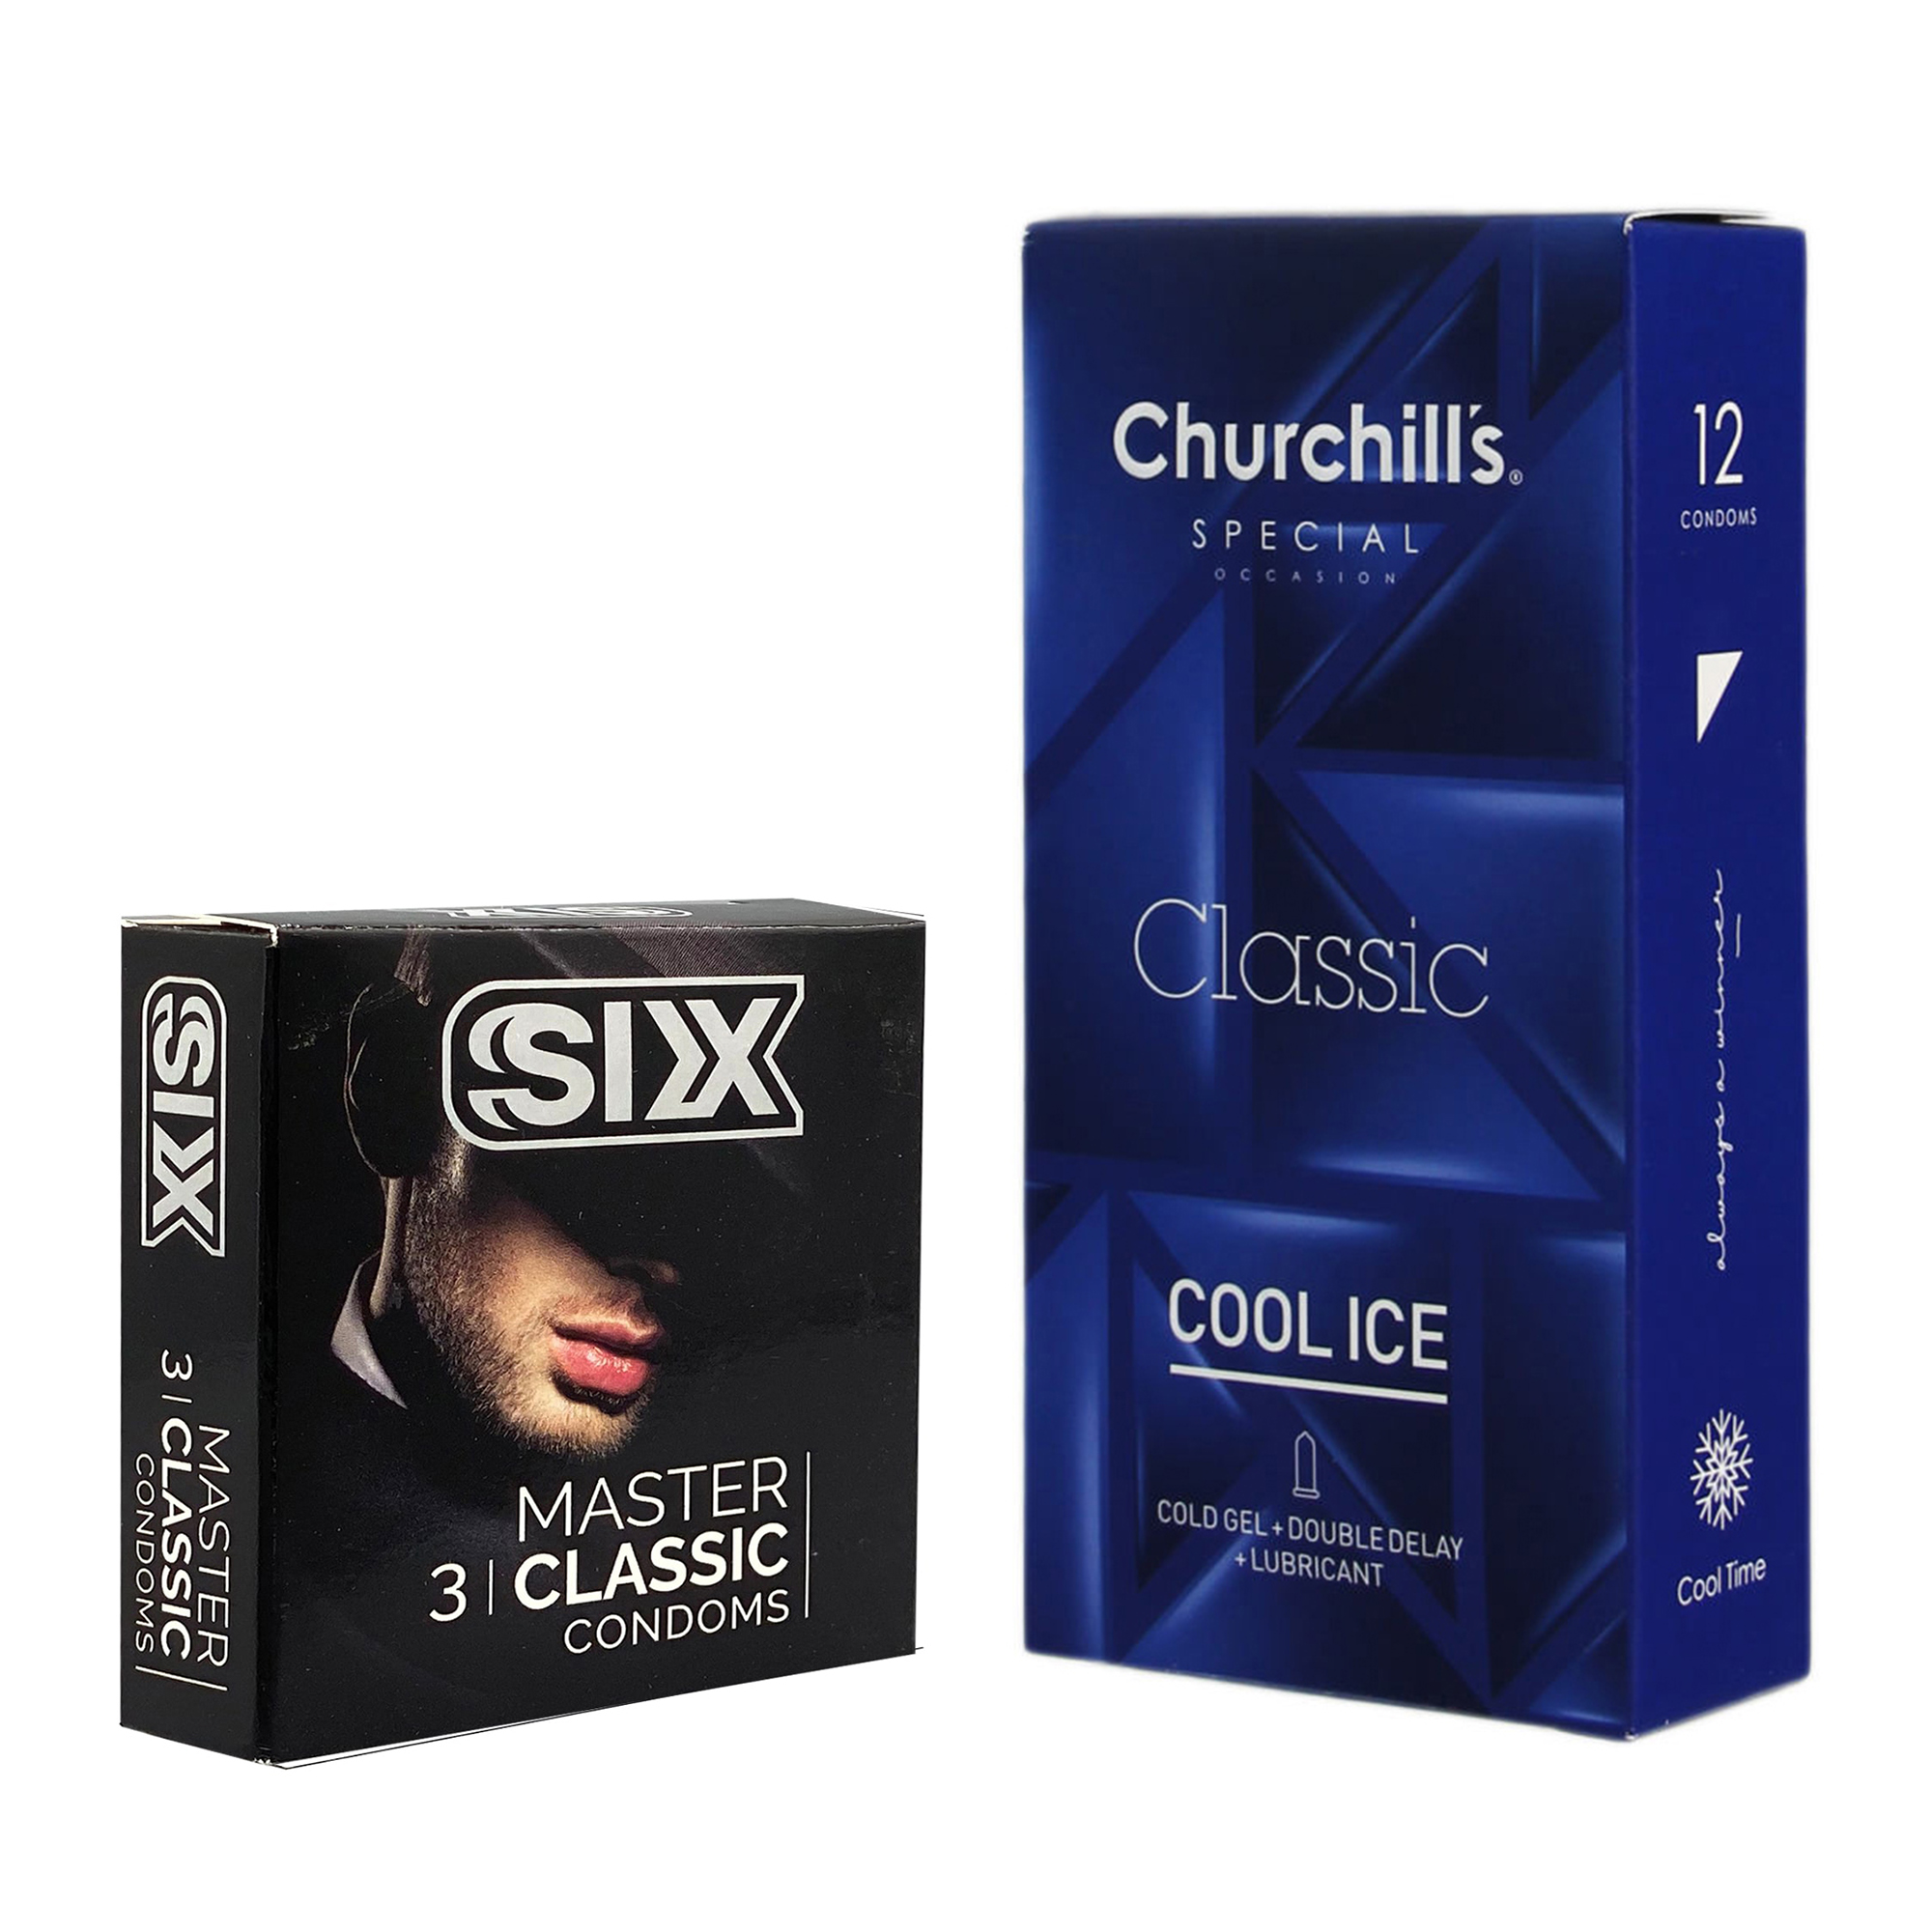 کاندوم چرچیلز مدل Cool Ice بسته 12 عددی به همراه کاندوم سیکس مدل کلاسیک بسته 3 عددی 